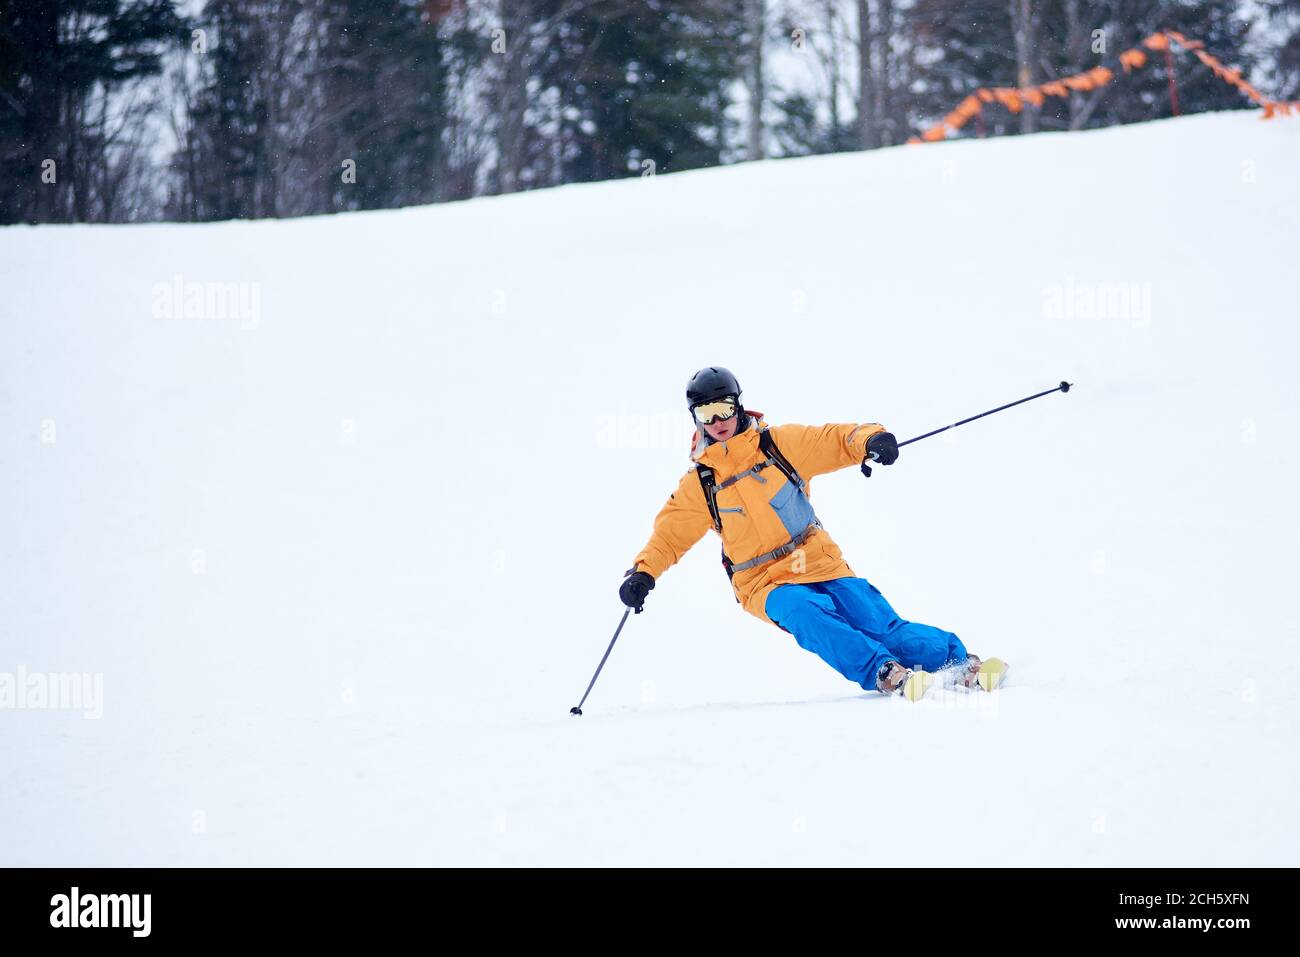 Der professionelle Skifahrer konzentrierte sich auf das Skifahren auf der steilen Skipiste. Geübtes technisches Carving Skifahren. Netz an Hangkante. Bewaldete Bergspitze im Hintergrund. Extreme Winteraktivitäten Konzept Stockfoto